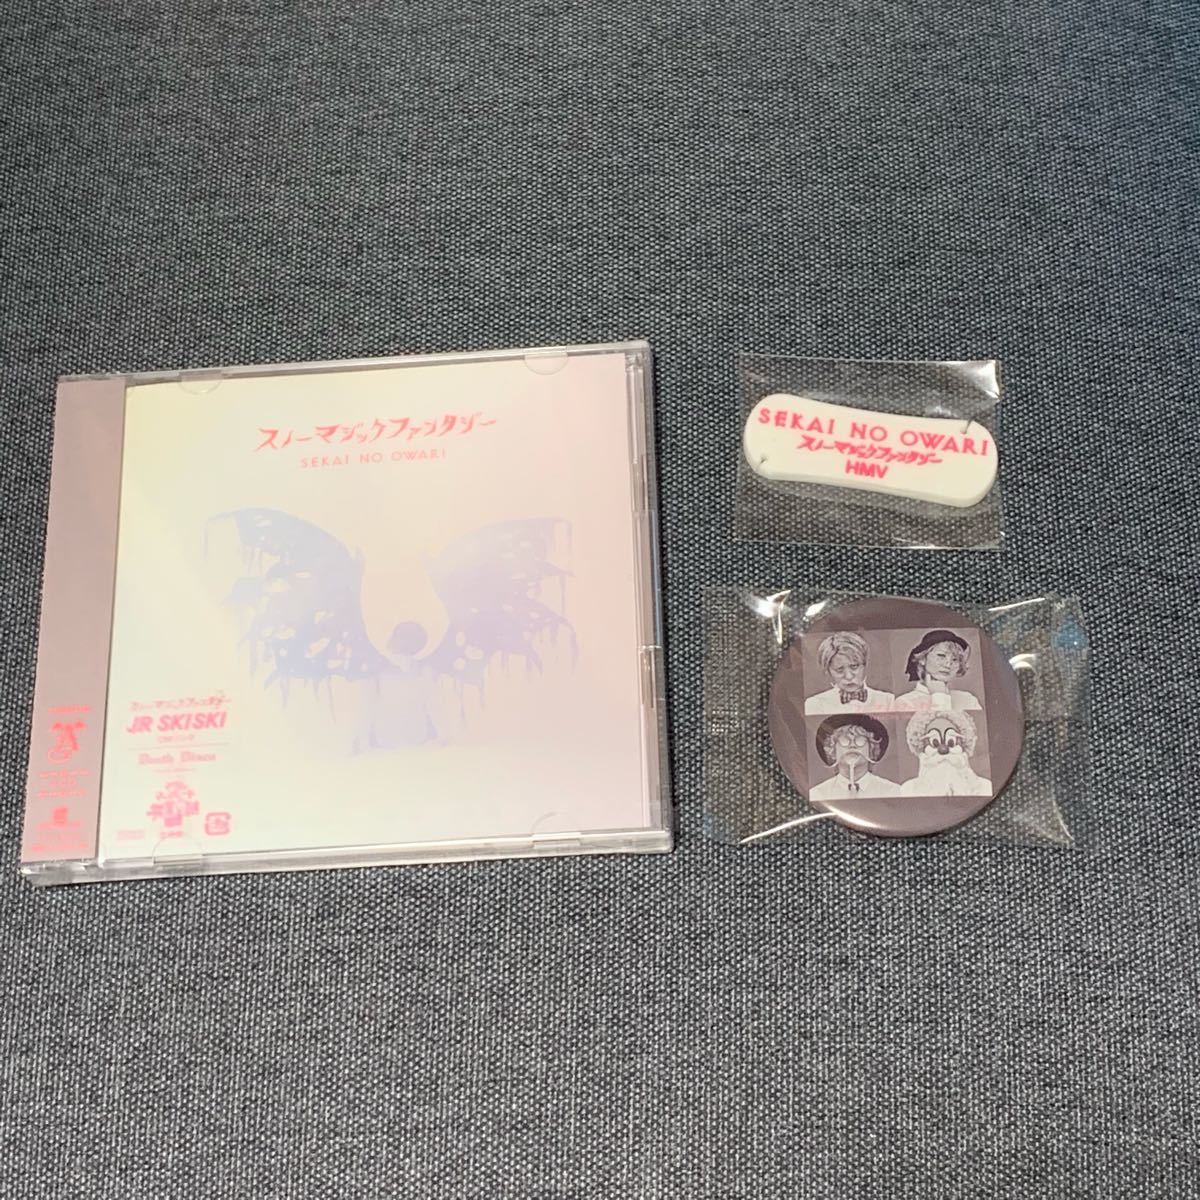 【初回限定盤】SEKAI NO OWARI スノーマジックファンタジー CD